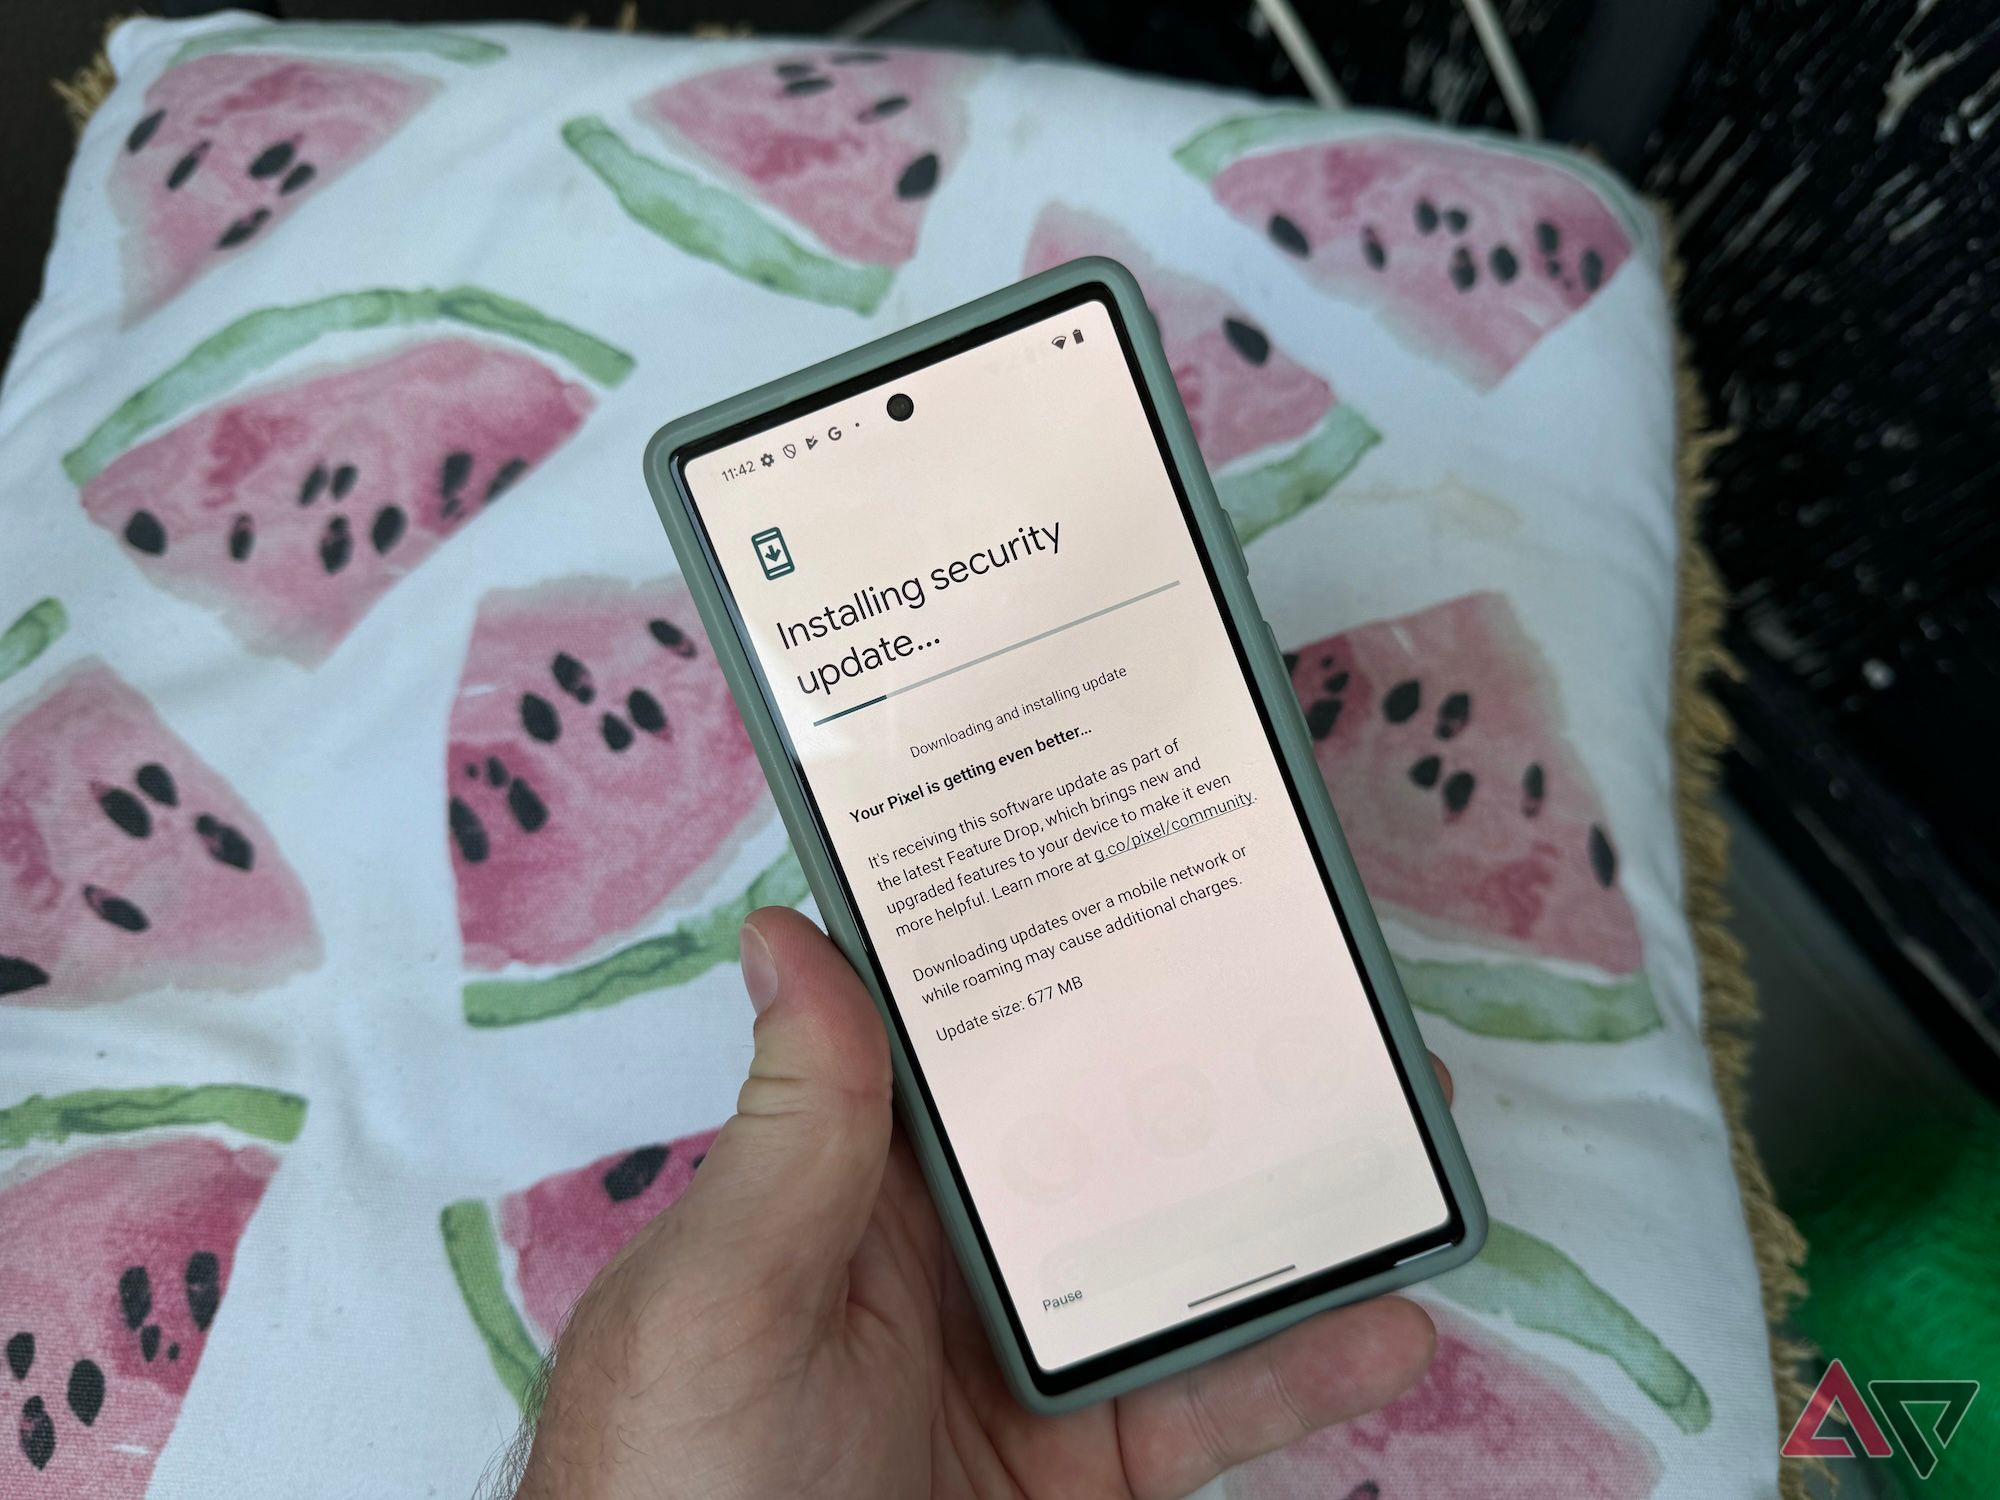 Mão de um homem segurando um Pixel 6 mostrando uma atualização em andamento com um travesseiro ao fundo com imagens de fatias de melancia rosa.